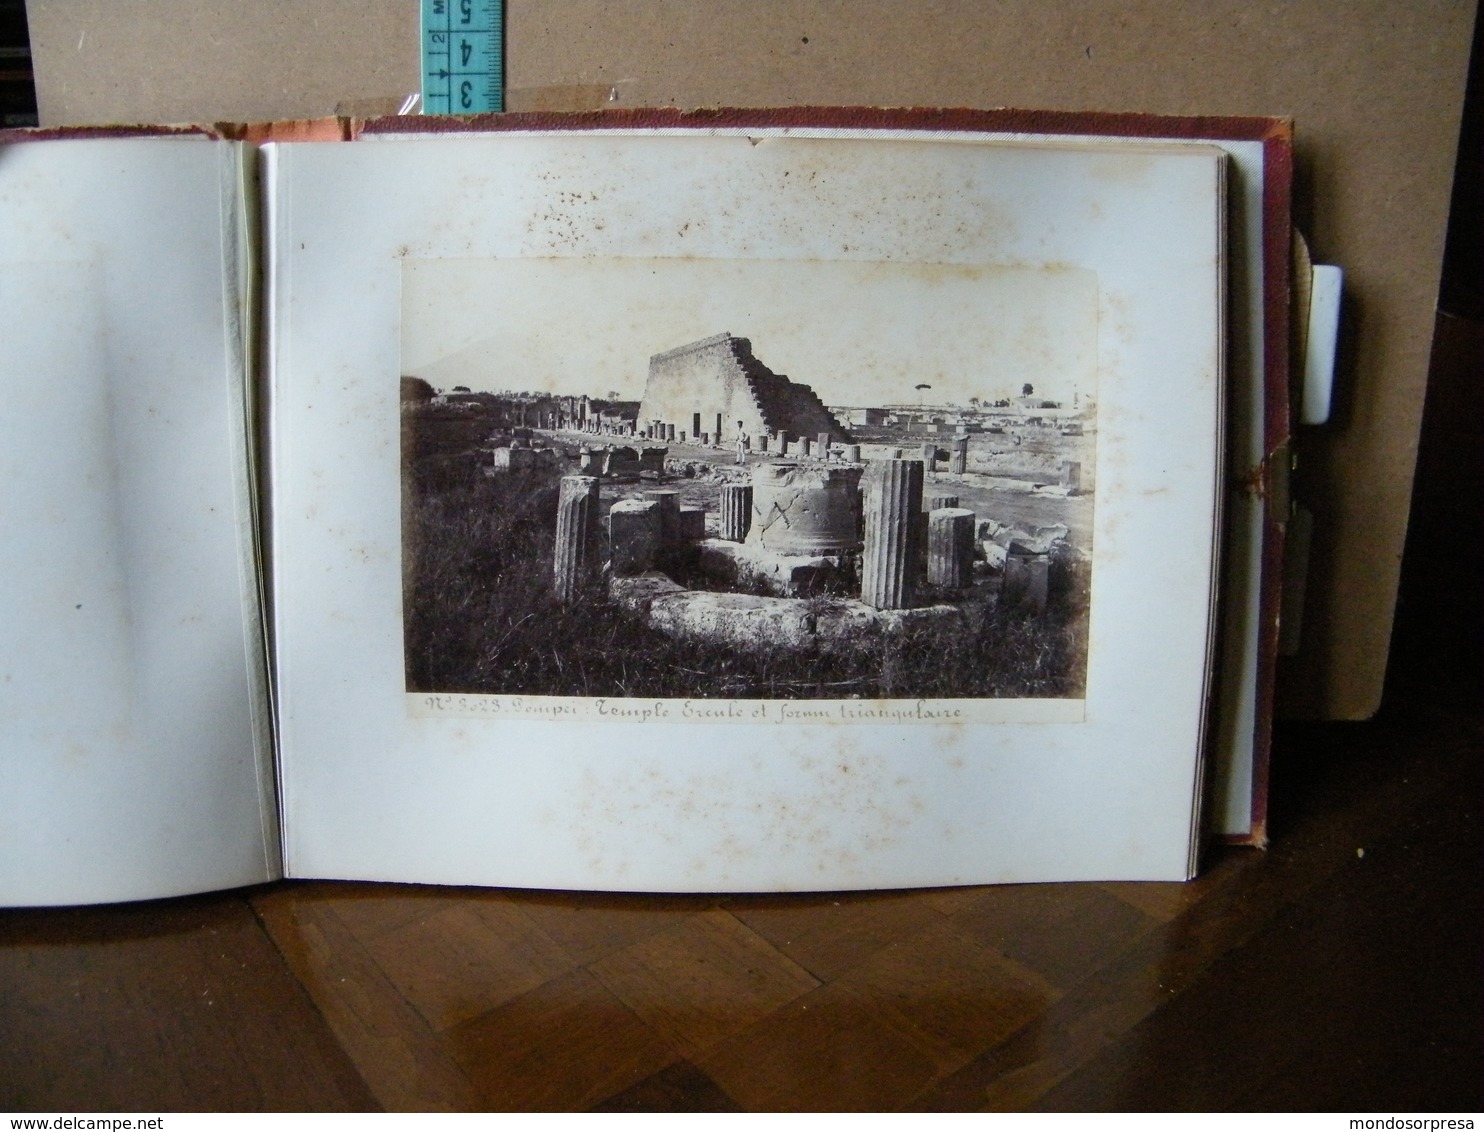 DB - ALBUM POMPEI - SOUVENIR, FOTOGRAFICO ANNO 1874 - 48 STAMPE FOTOGRAFICHE - NAPOLI